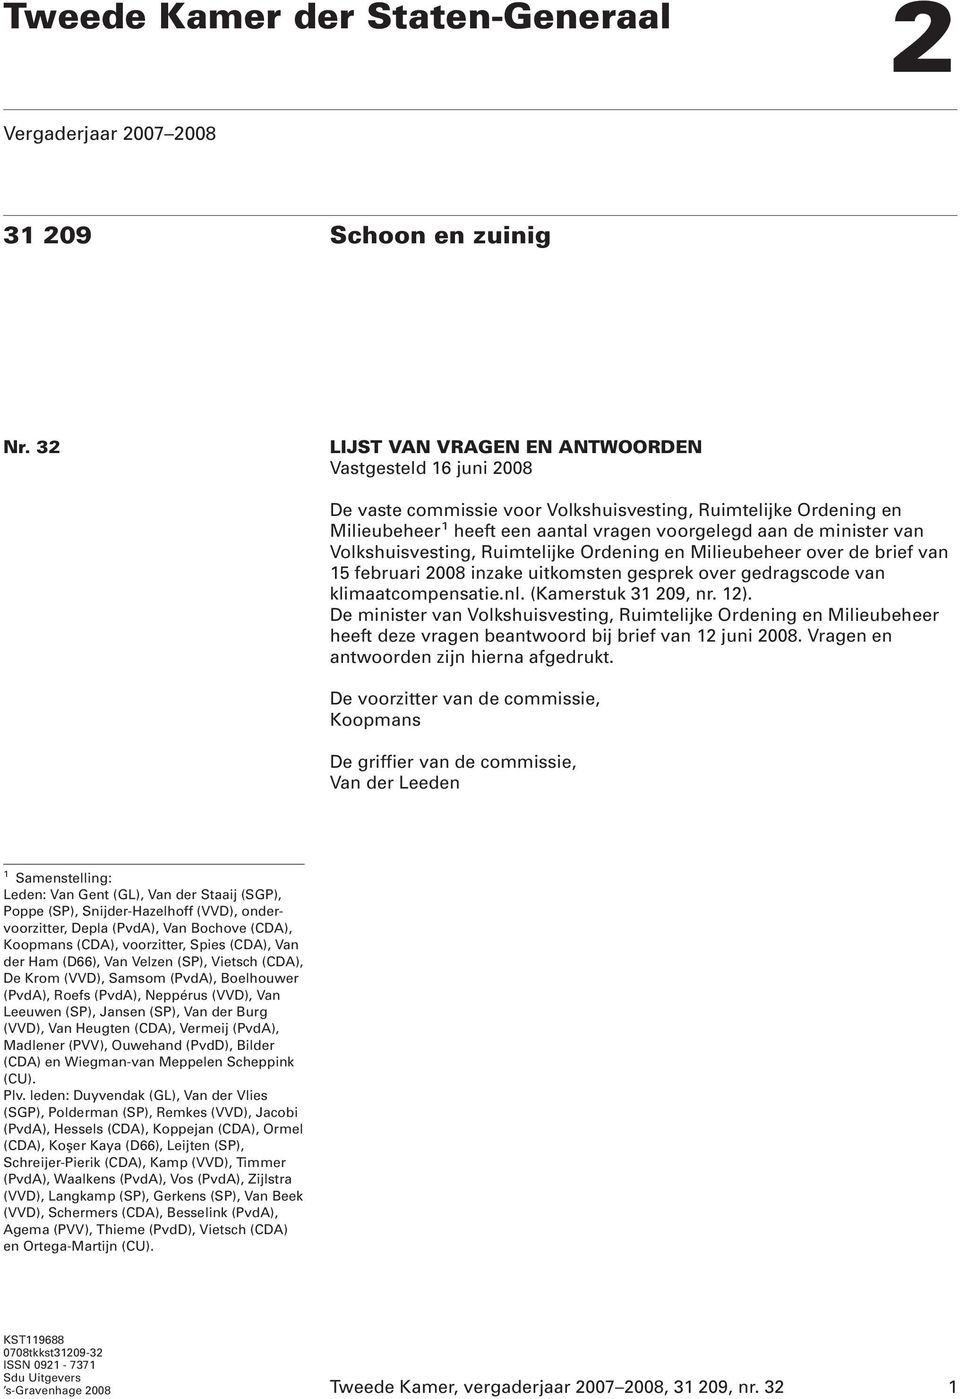 Volkshuisvesting, Ruimtelijke Ordening en Milieubeheer over de brief van 15 februari 2008 inzake uitkomsten gesprek over gedragscode van klimaatcompensatie.nl. (Kamerstuk 31 209, nr. 12).